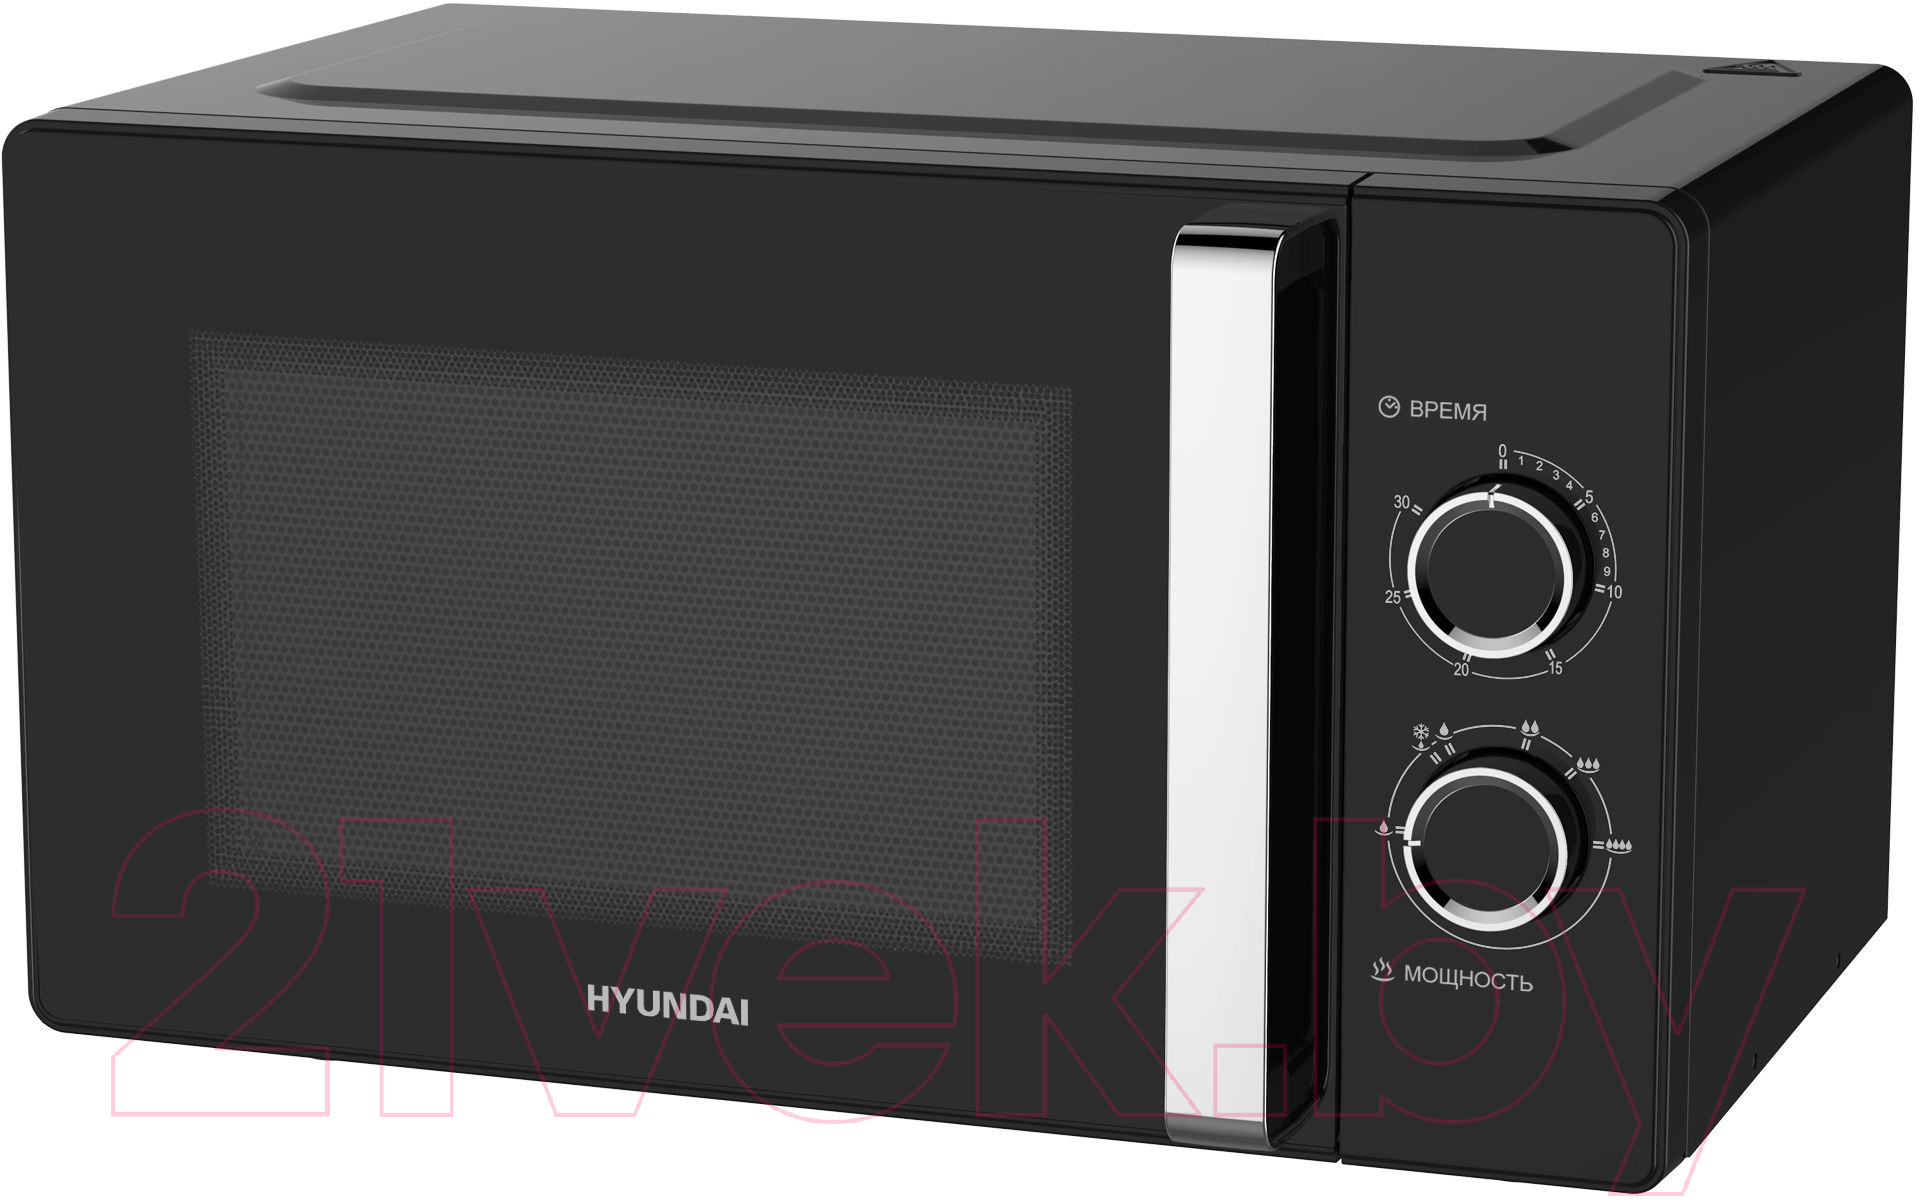 Микроволновая печь Hyundai HYM-M2012